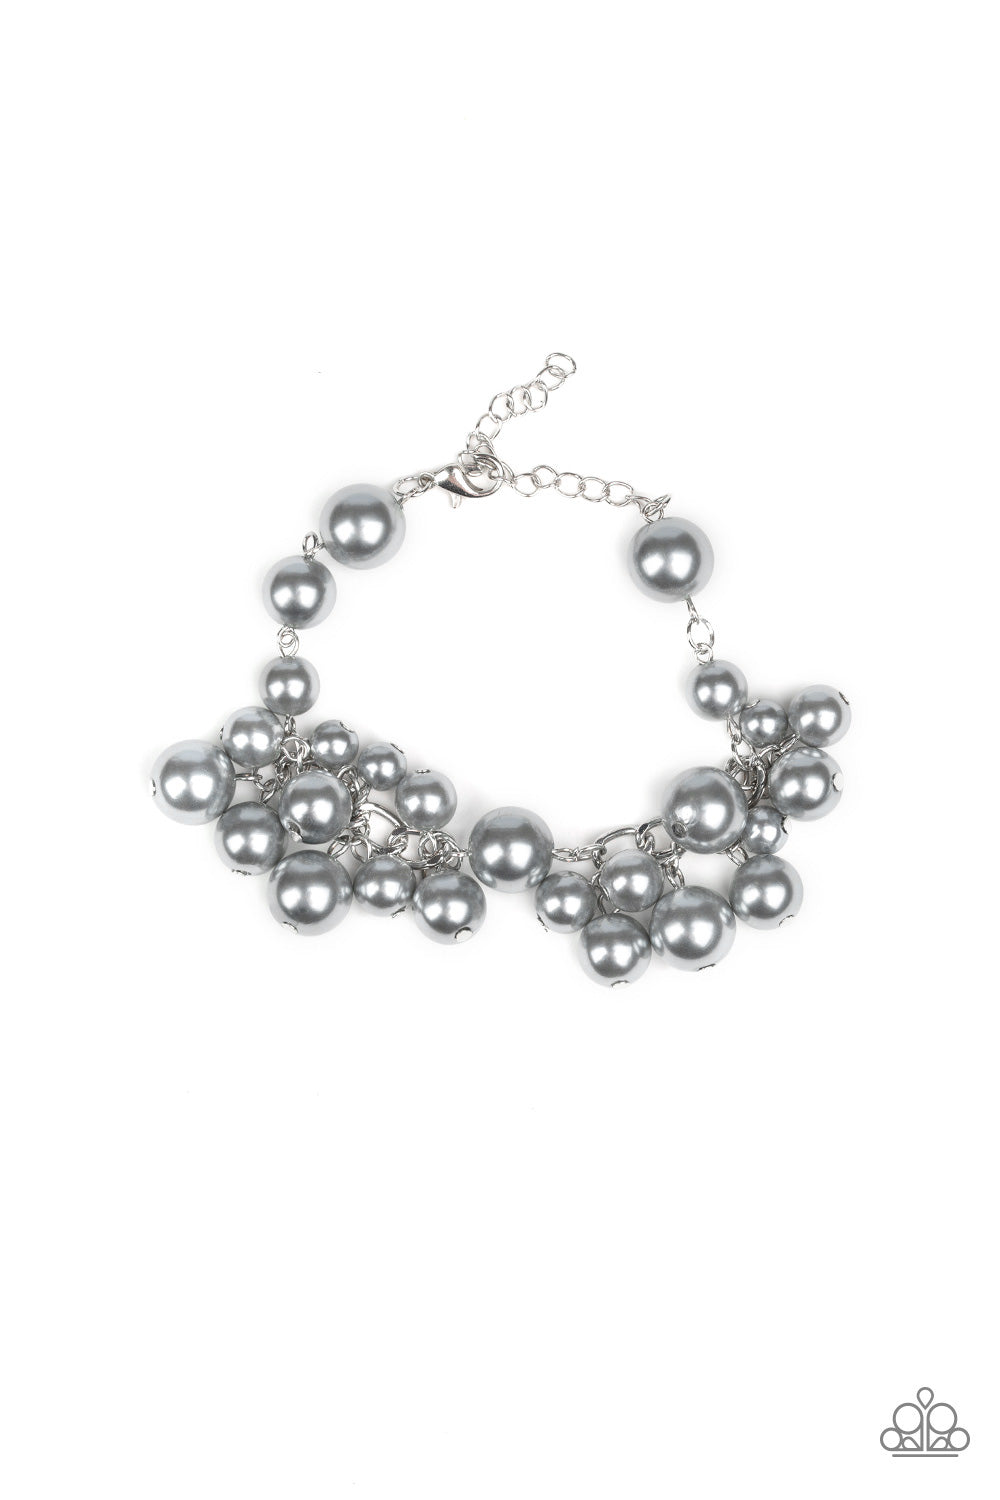 Girls in Pearls - silver pearl bracelet